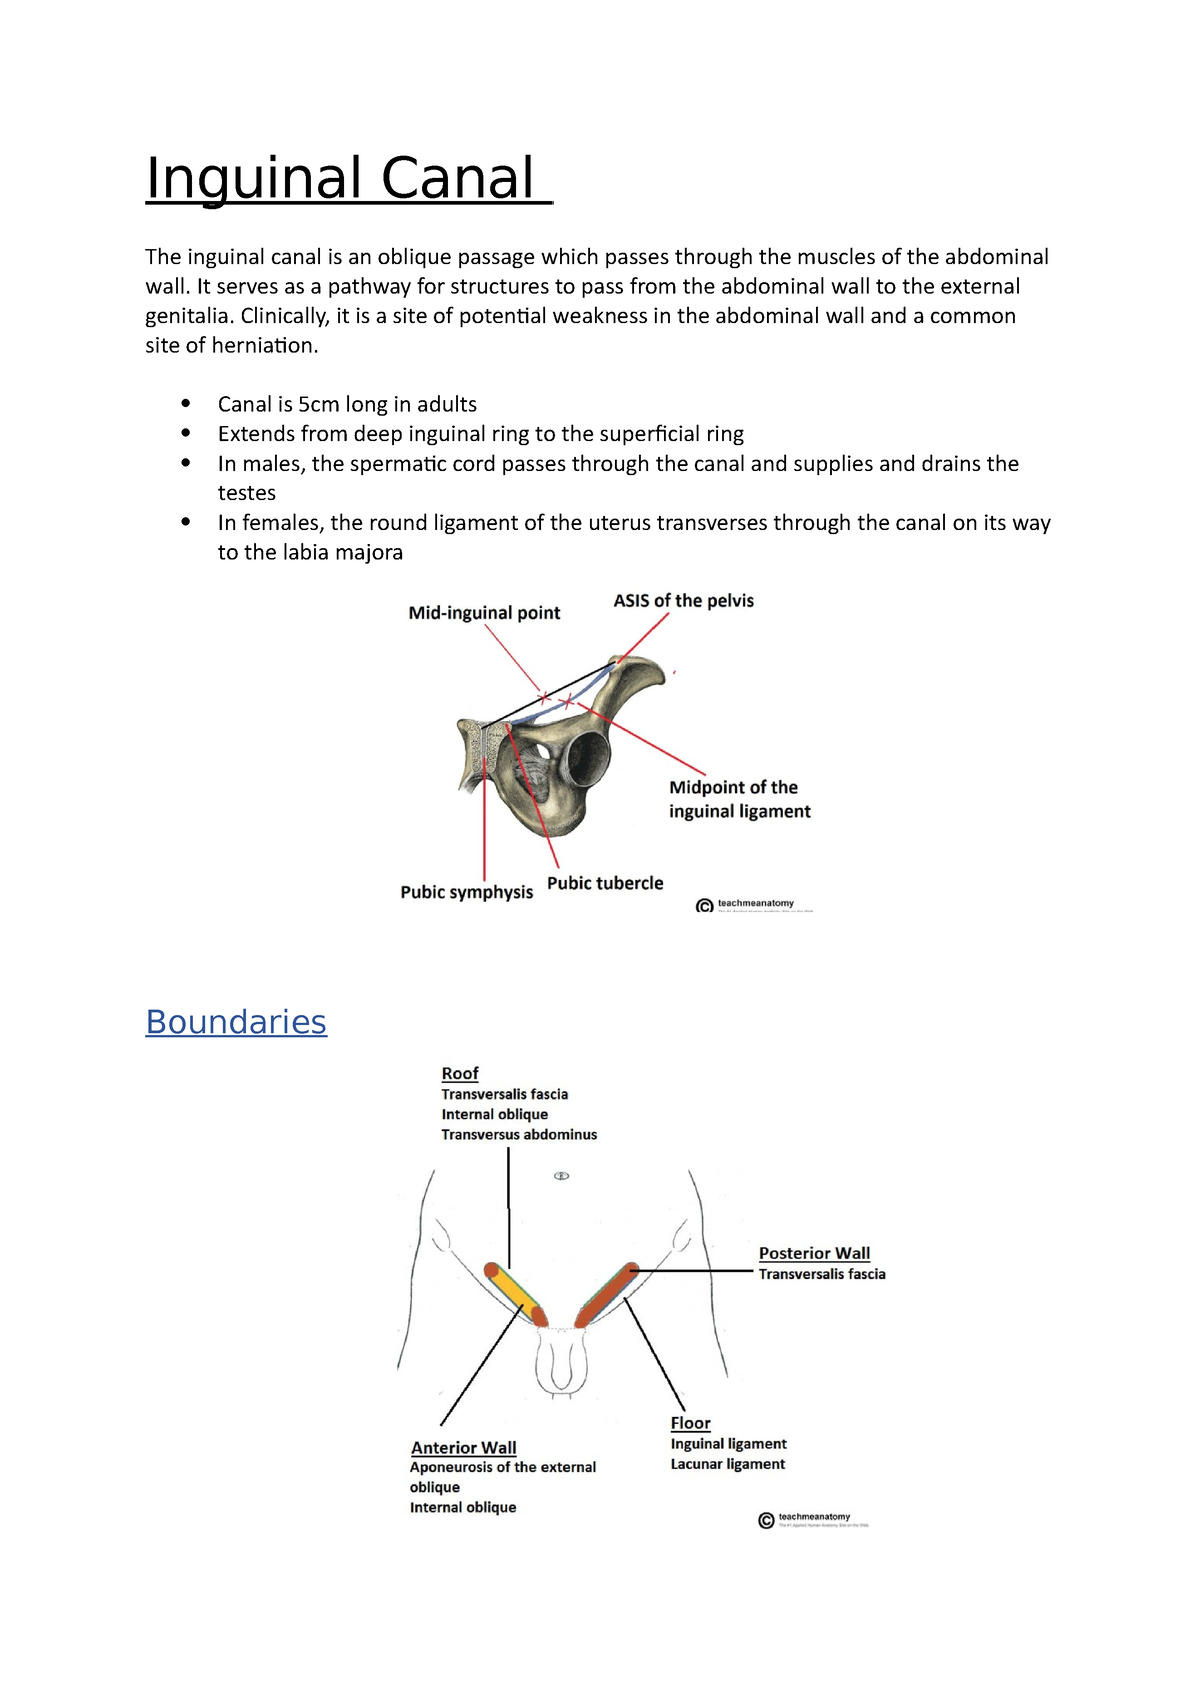 Inguinal Canal - Gastrointestinal - Medbullets Step 1